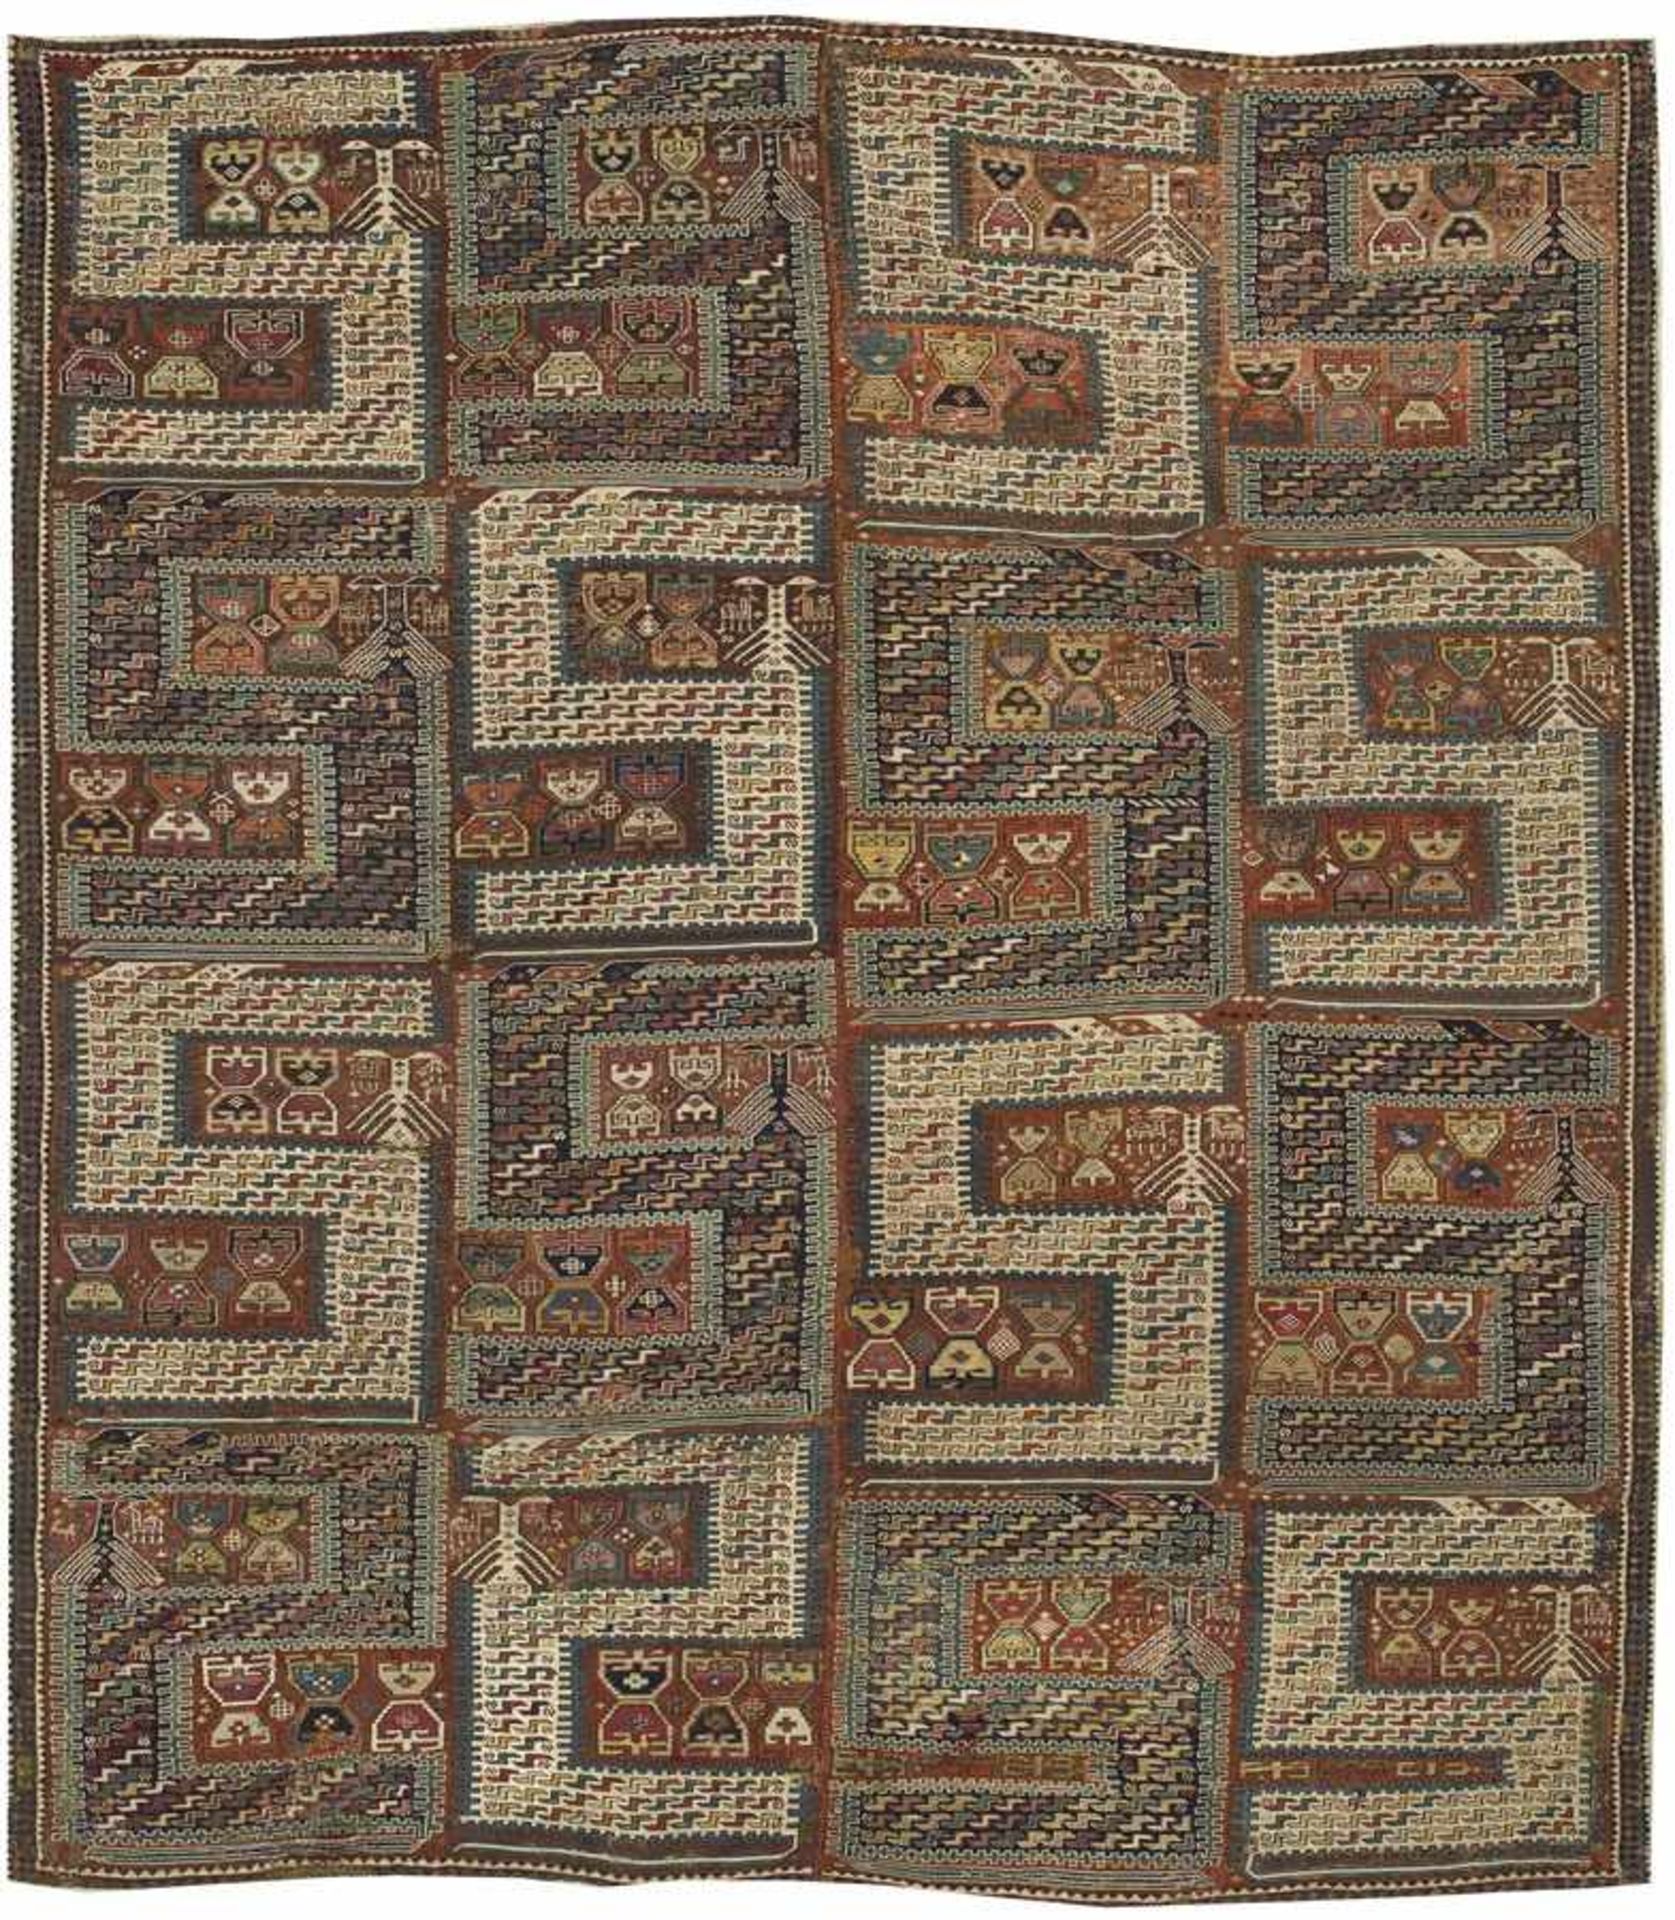 Äußerst seltener antiker Sileh-DrachenteppichKaukasus. Mitte 19. Jh.; Wolle und Baumwolle in Sumak-